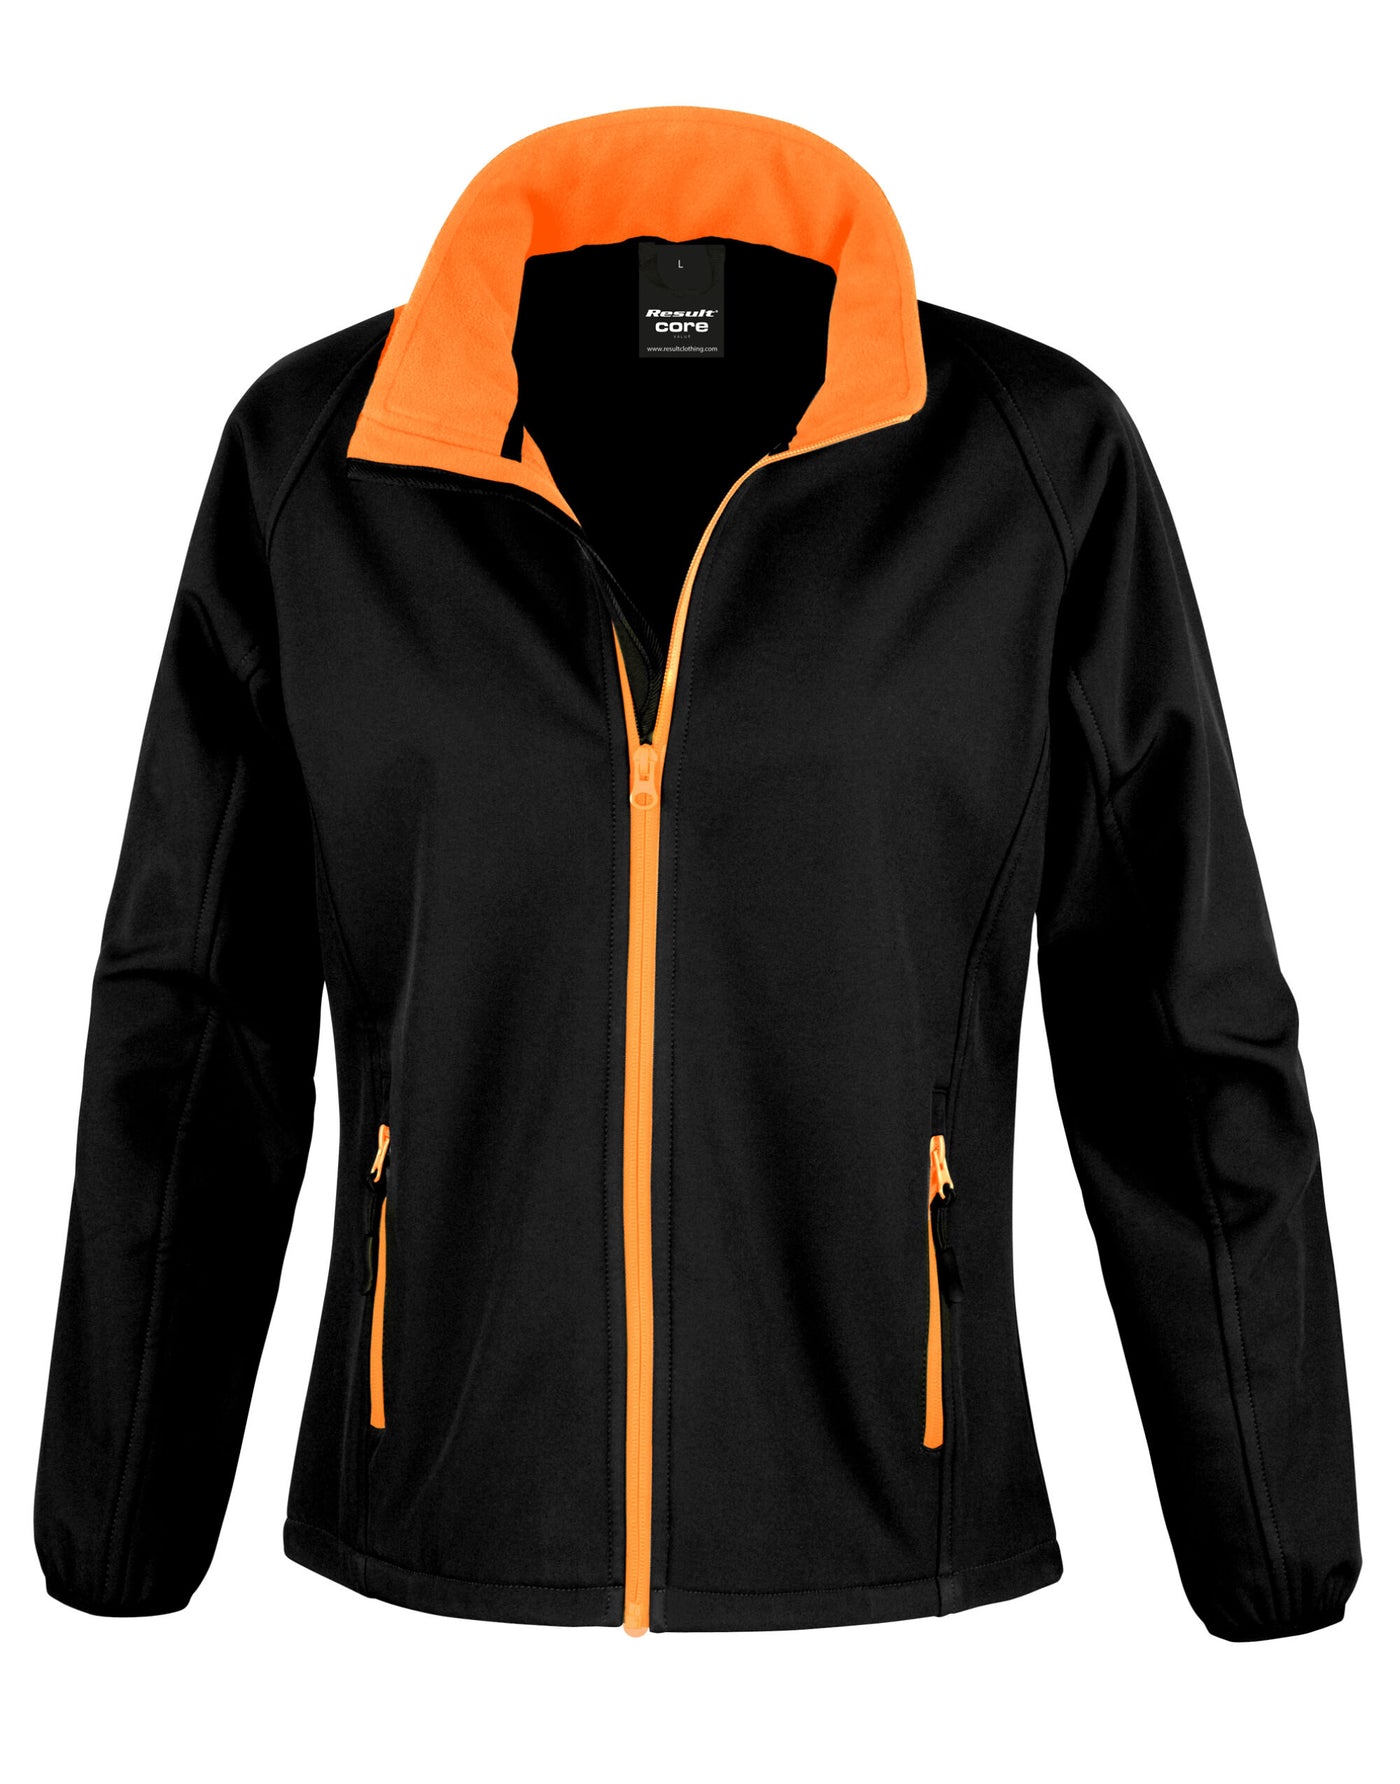 Ladies Printable Soft Shell Jacket In Black Orange